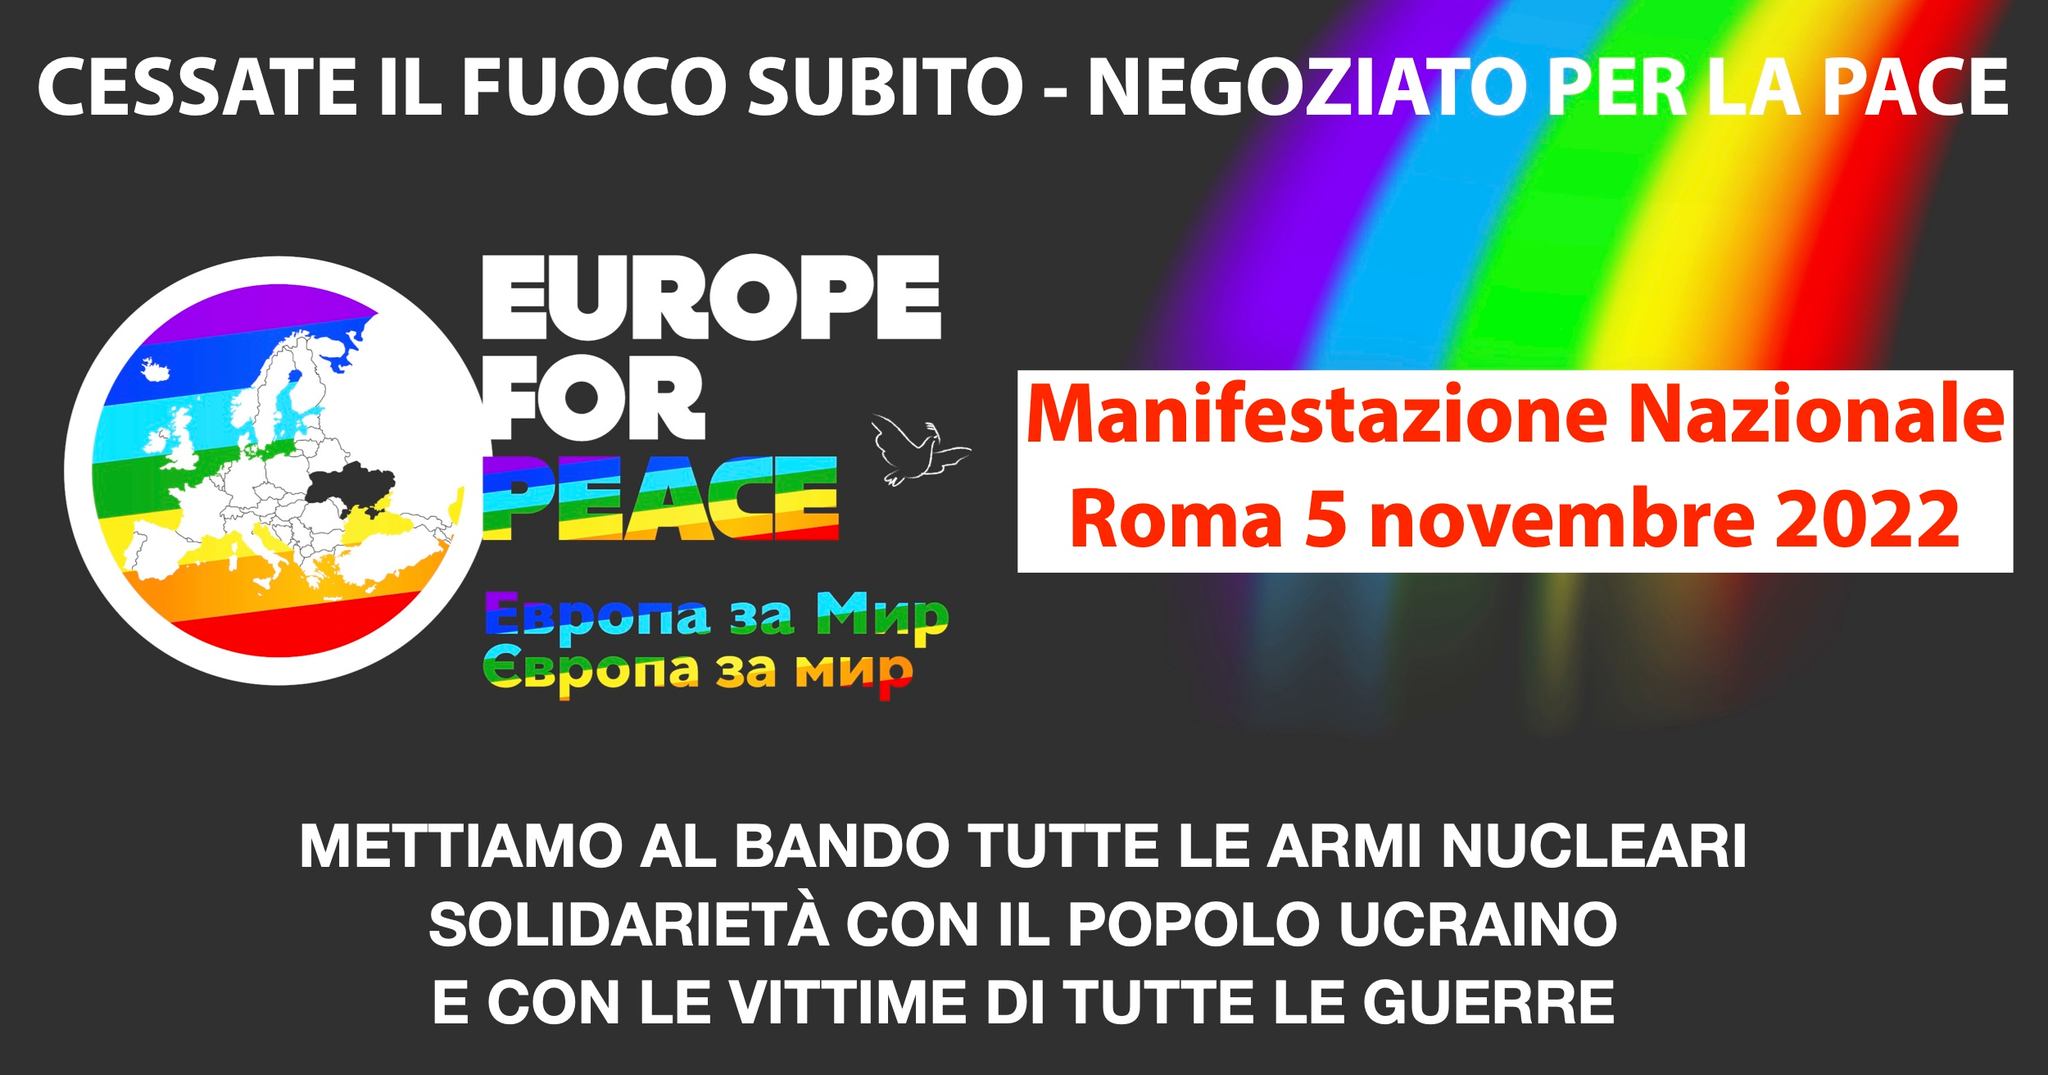 CESSATE IL FUOCO SUBITO, NEGOZIATO PER LA PACE! Il 5 novembre manifestazione nazionale a Roma.